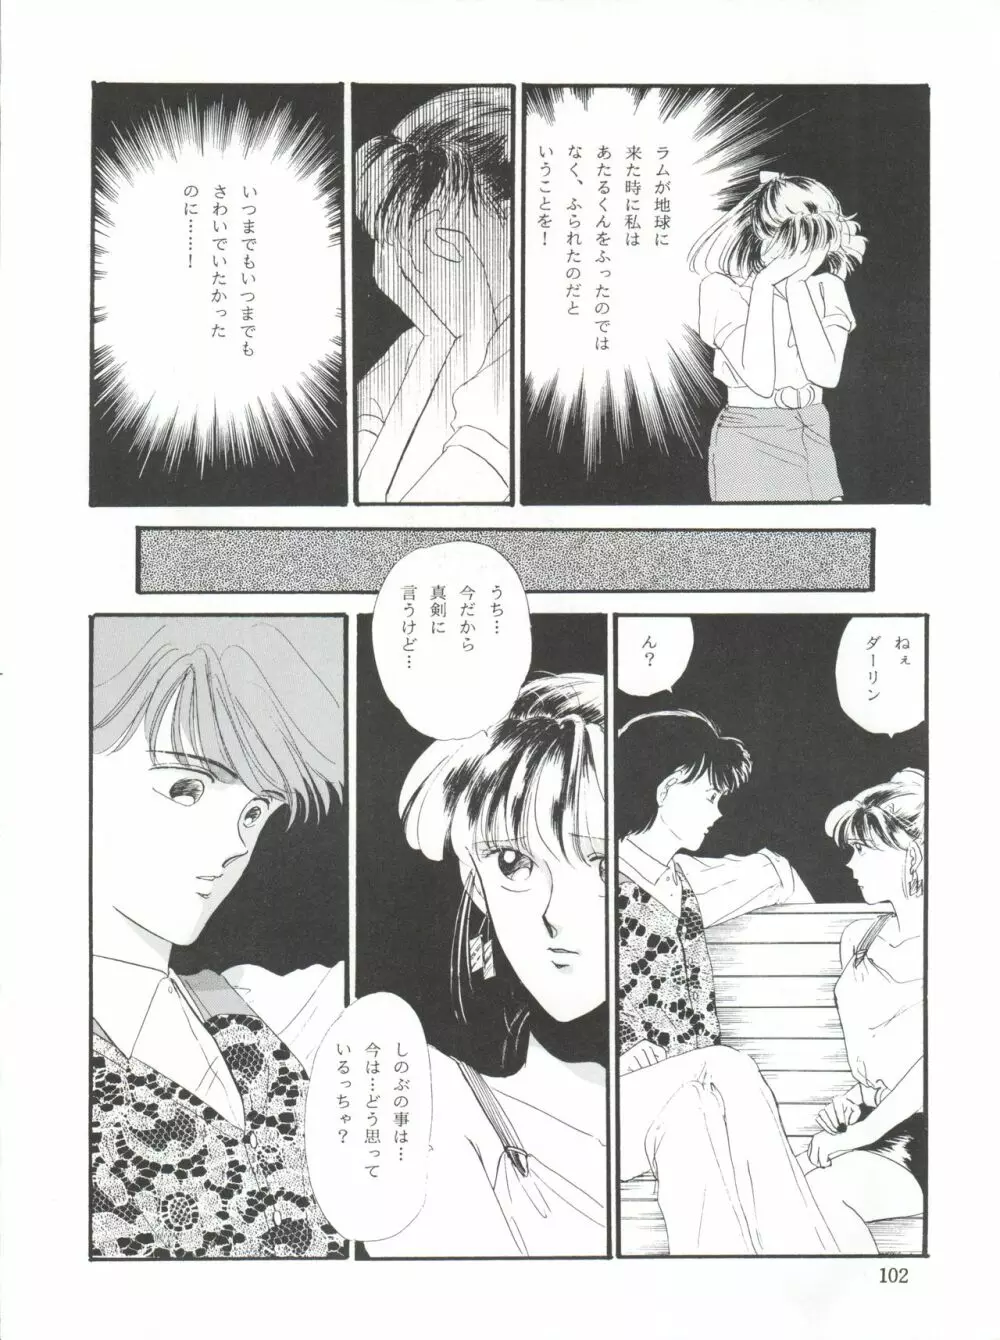 NANIWA-YA FINAL DRESS UP! - page102